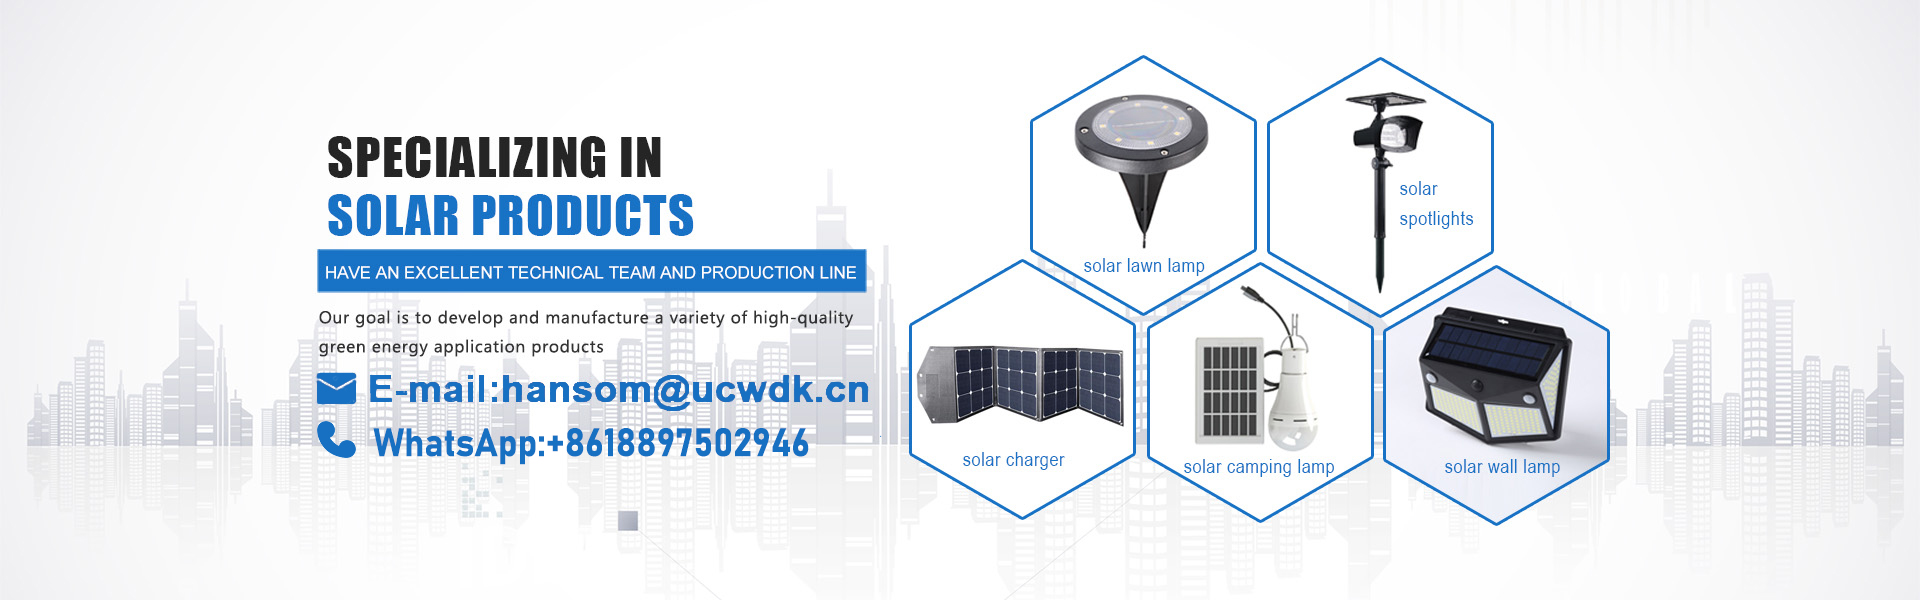 شاحن للطاقة الشمسية، ضوء الشمسية، لوحة للطاقة الشمسية,UCWDK Solar Technology Co. Ltd.